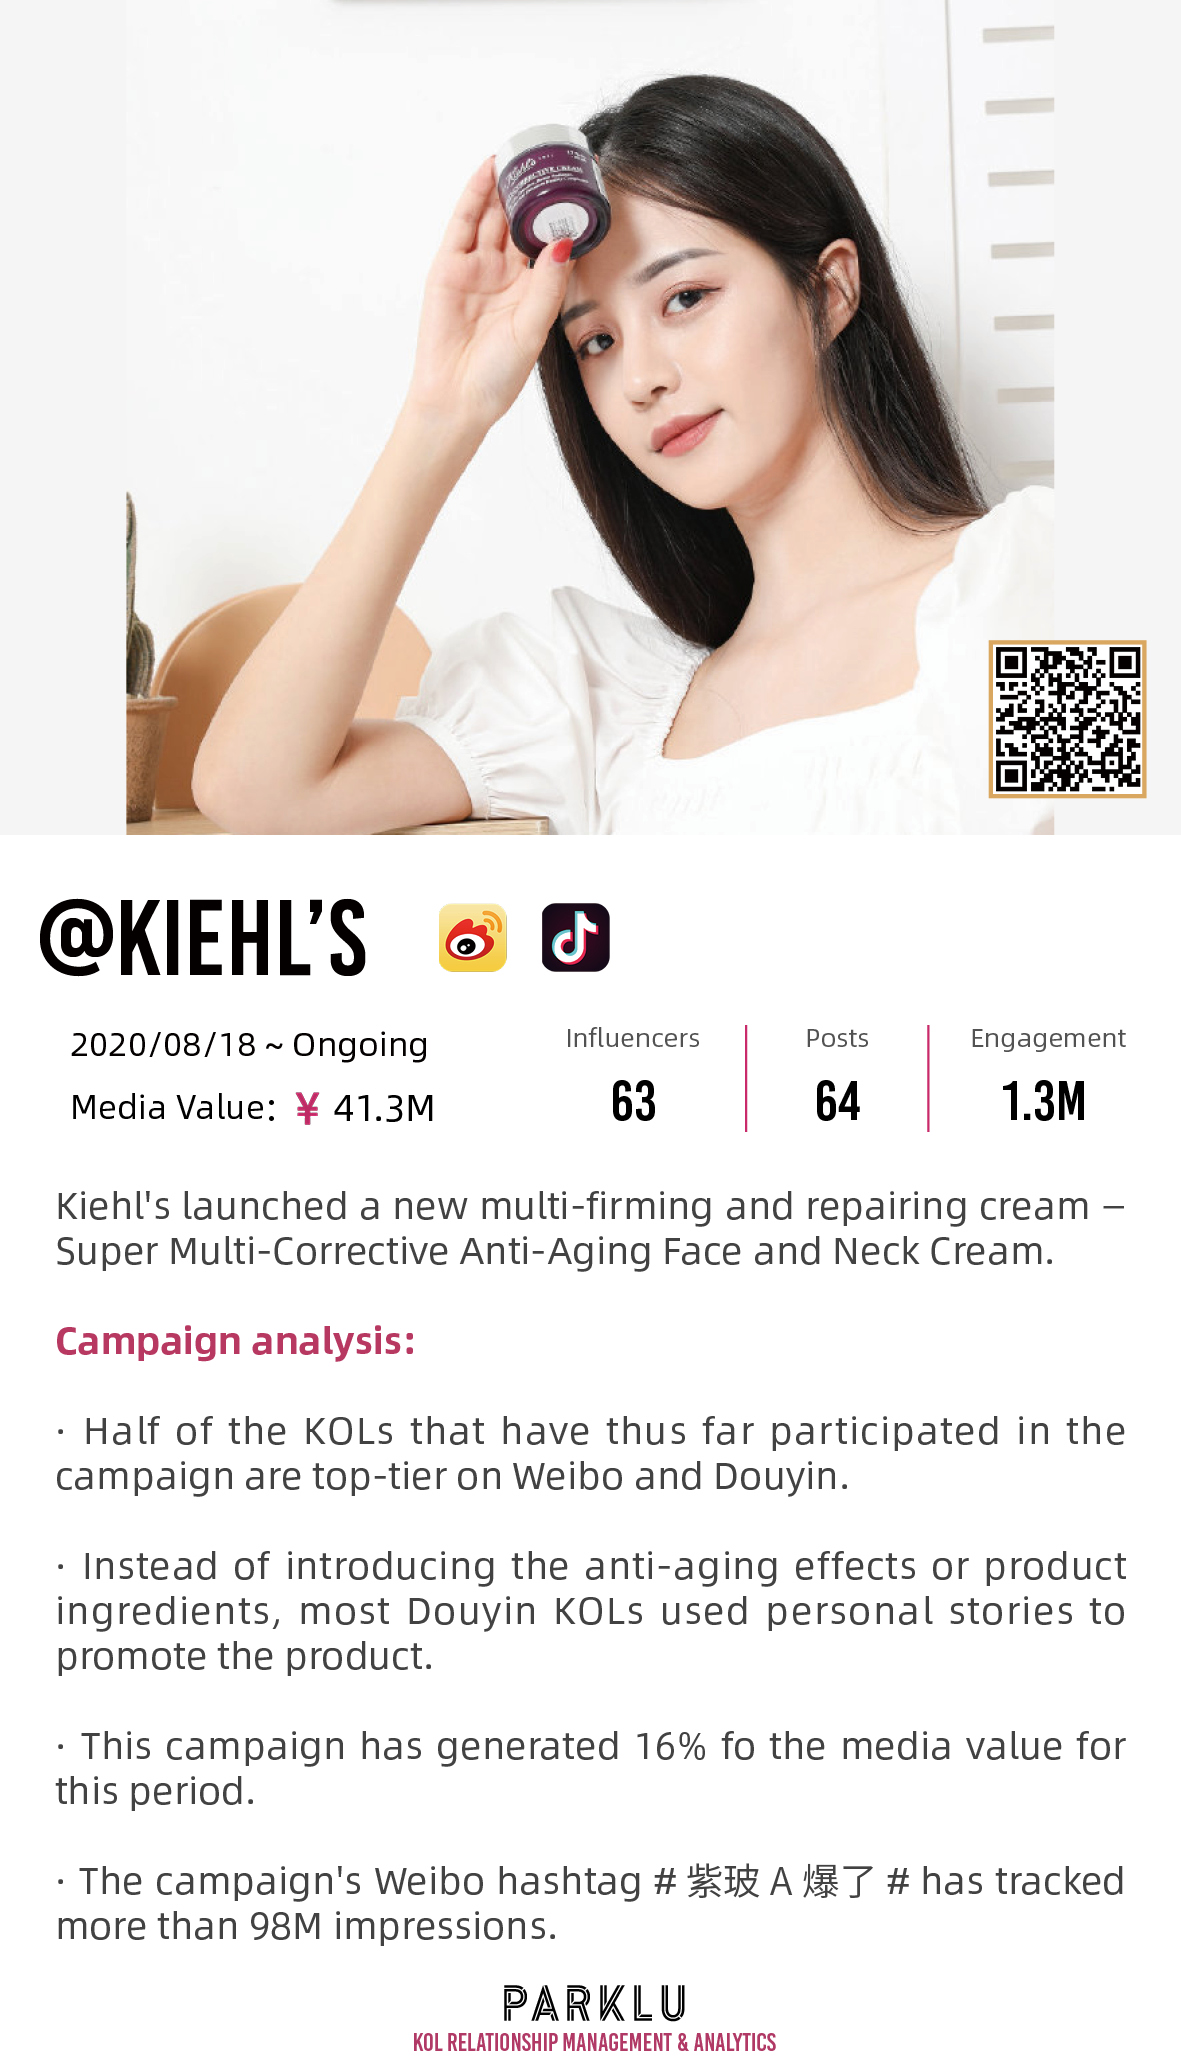 Kiehl's new Super Multi-Corrective Anti-Aging Face and Neck Cream